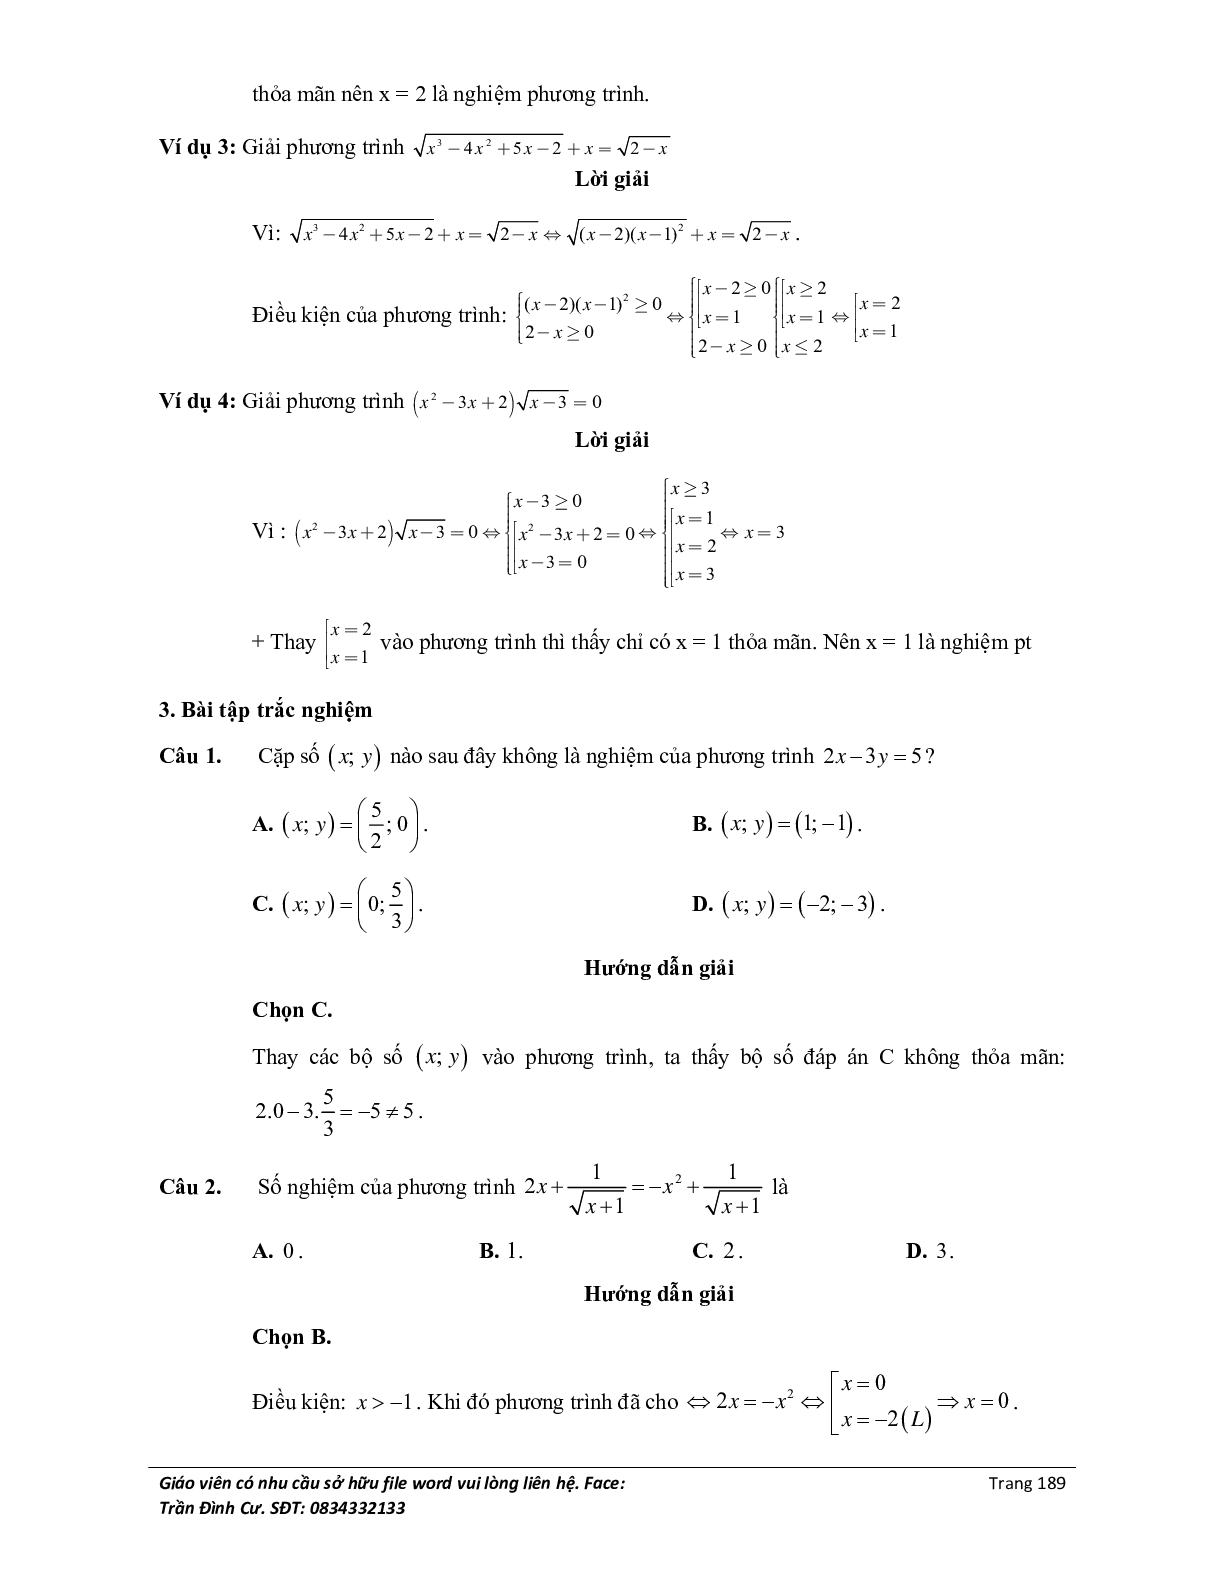 Đại cương về phương trình môn Toán lớp 10 (trang 7)